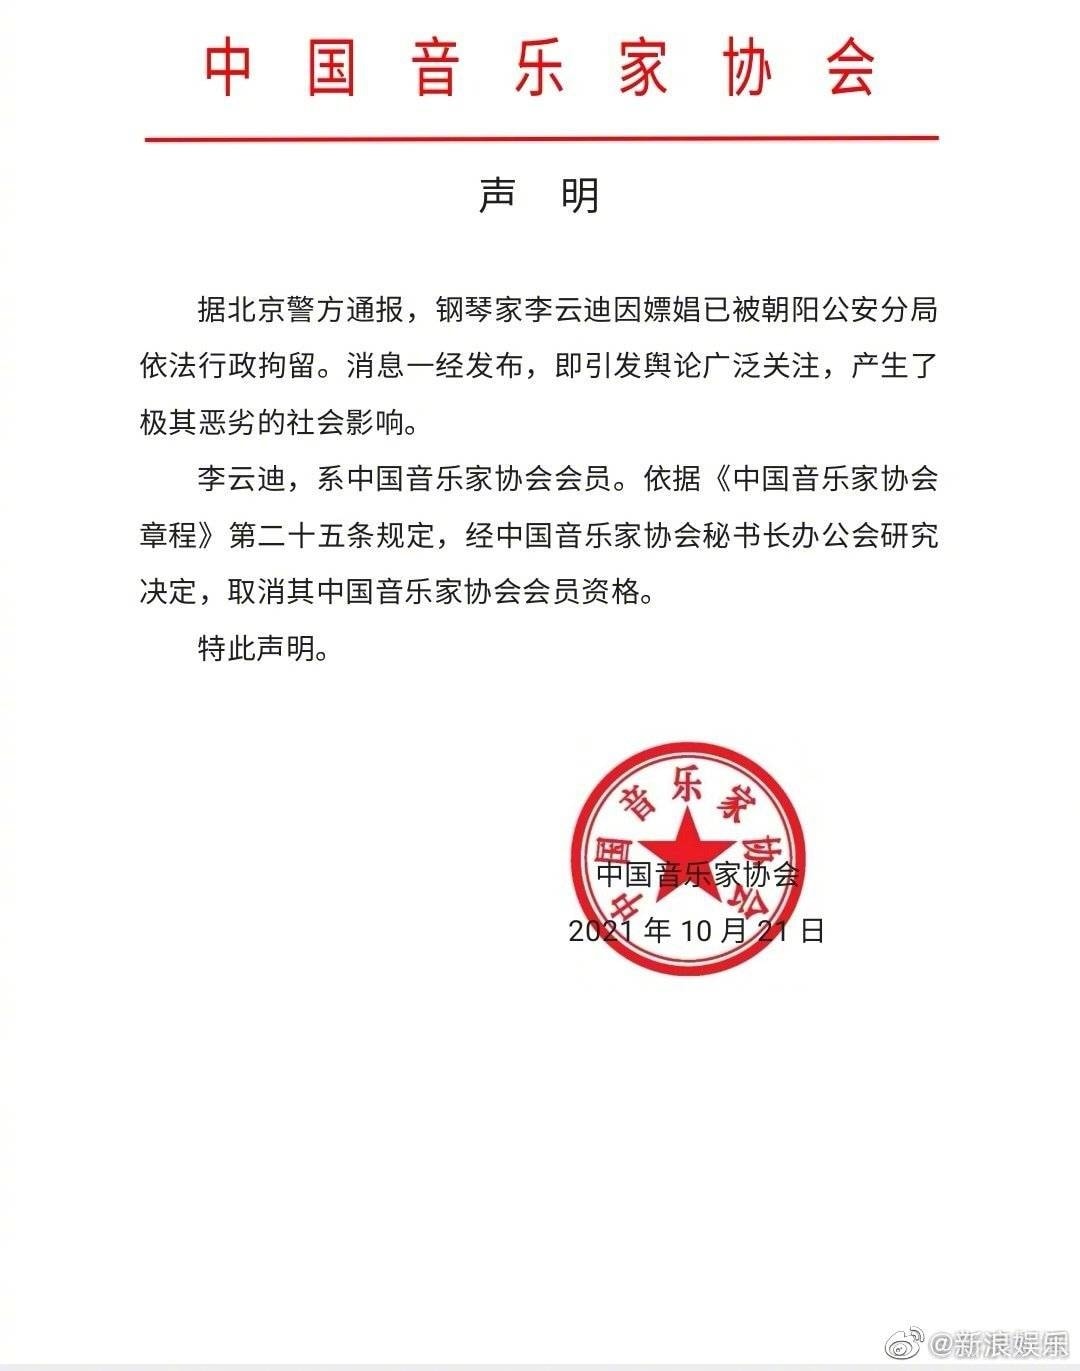 Hiệp hội nhạc sĩ Trung Quốc hủy bỏ tư cách hội viên của Lý Vân Địch sau bê bối 'động trời'